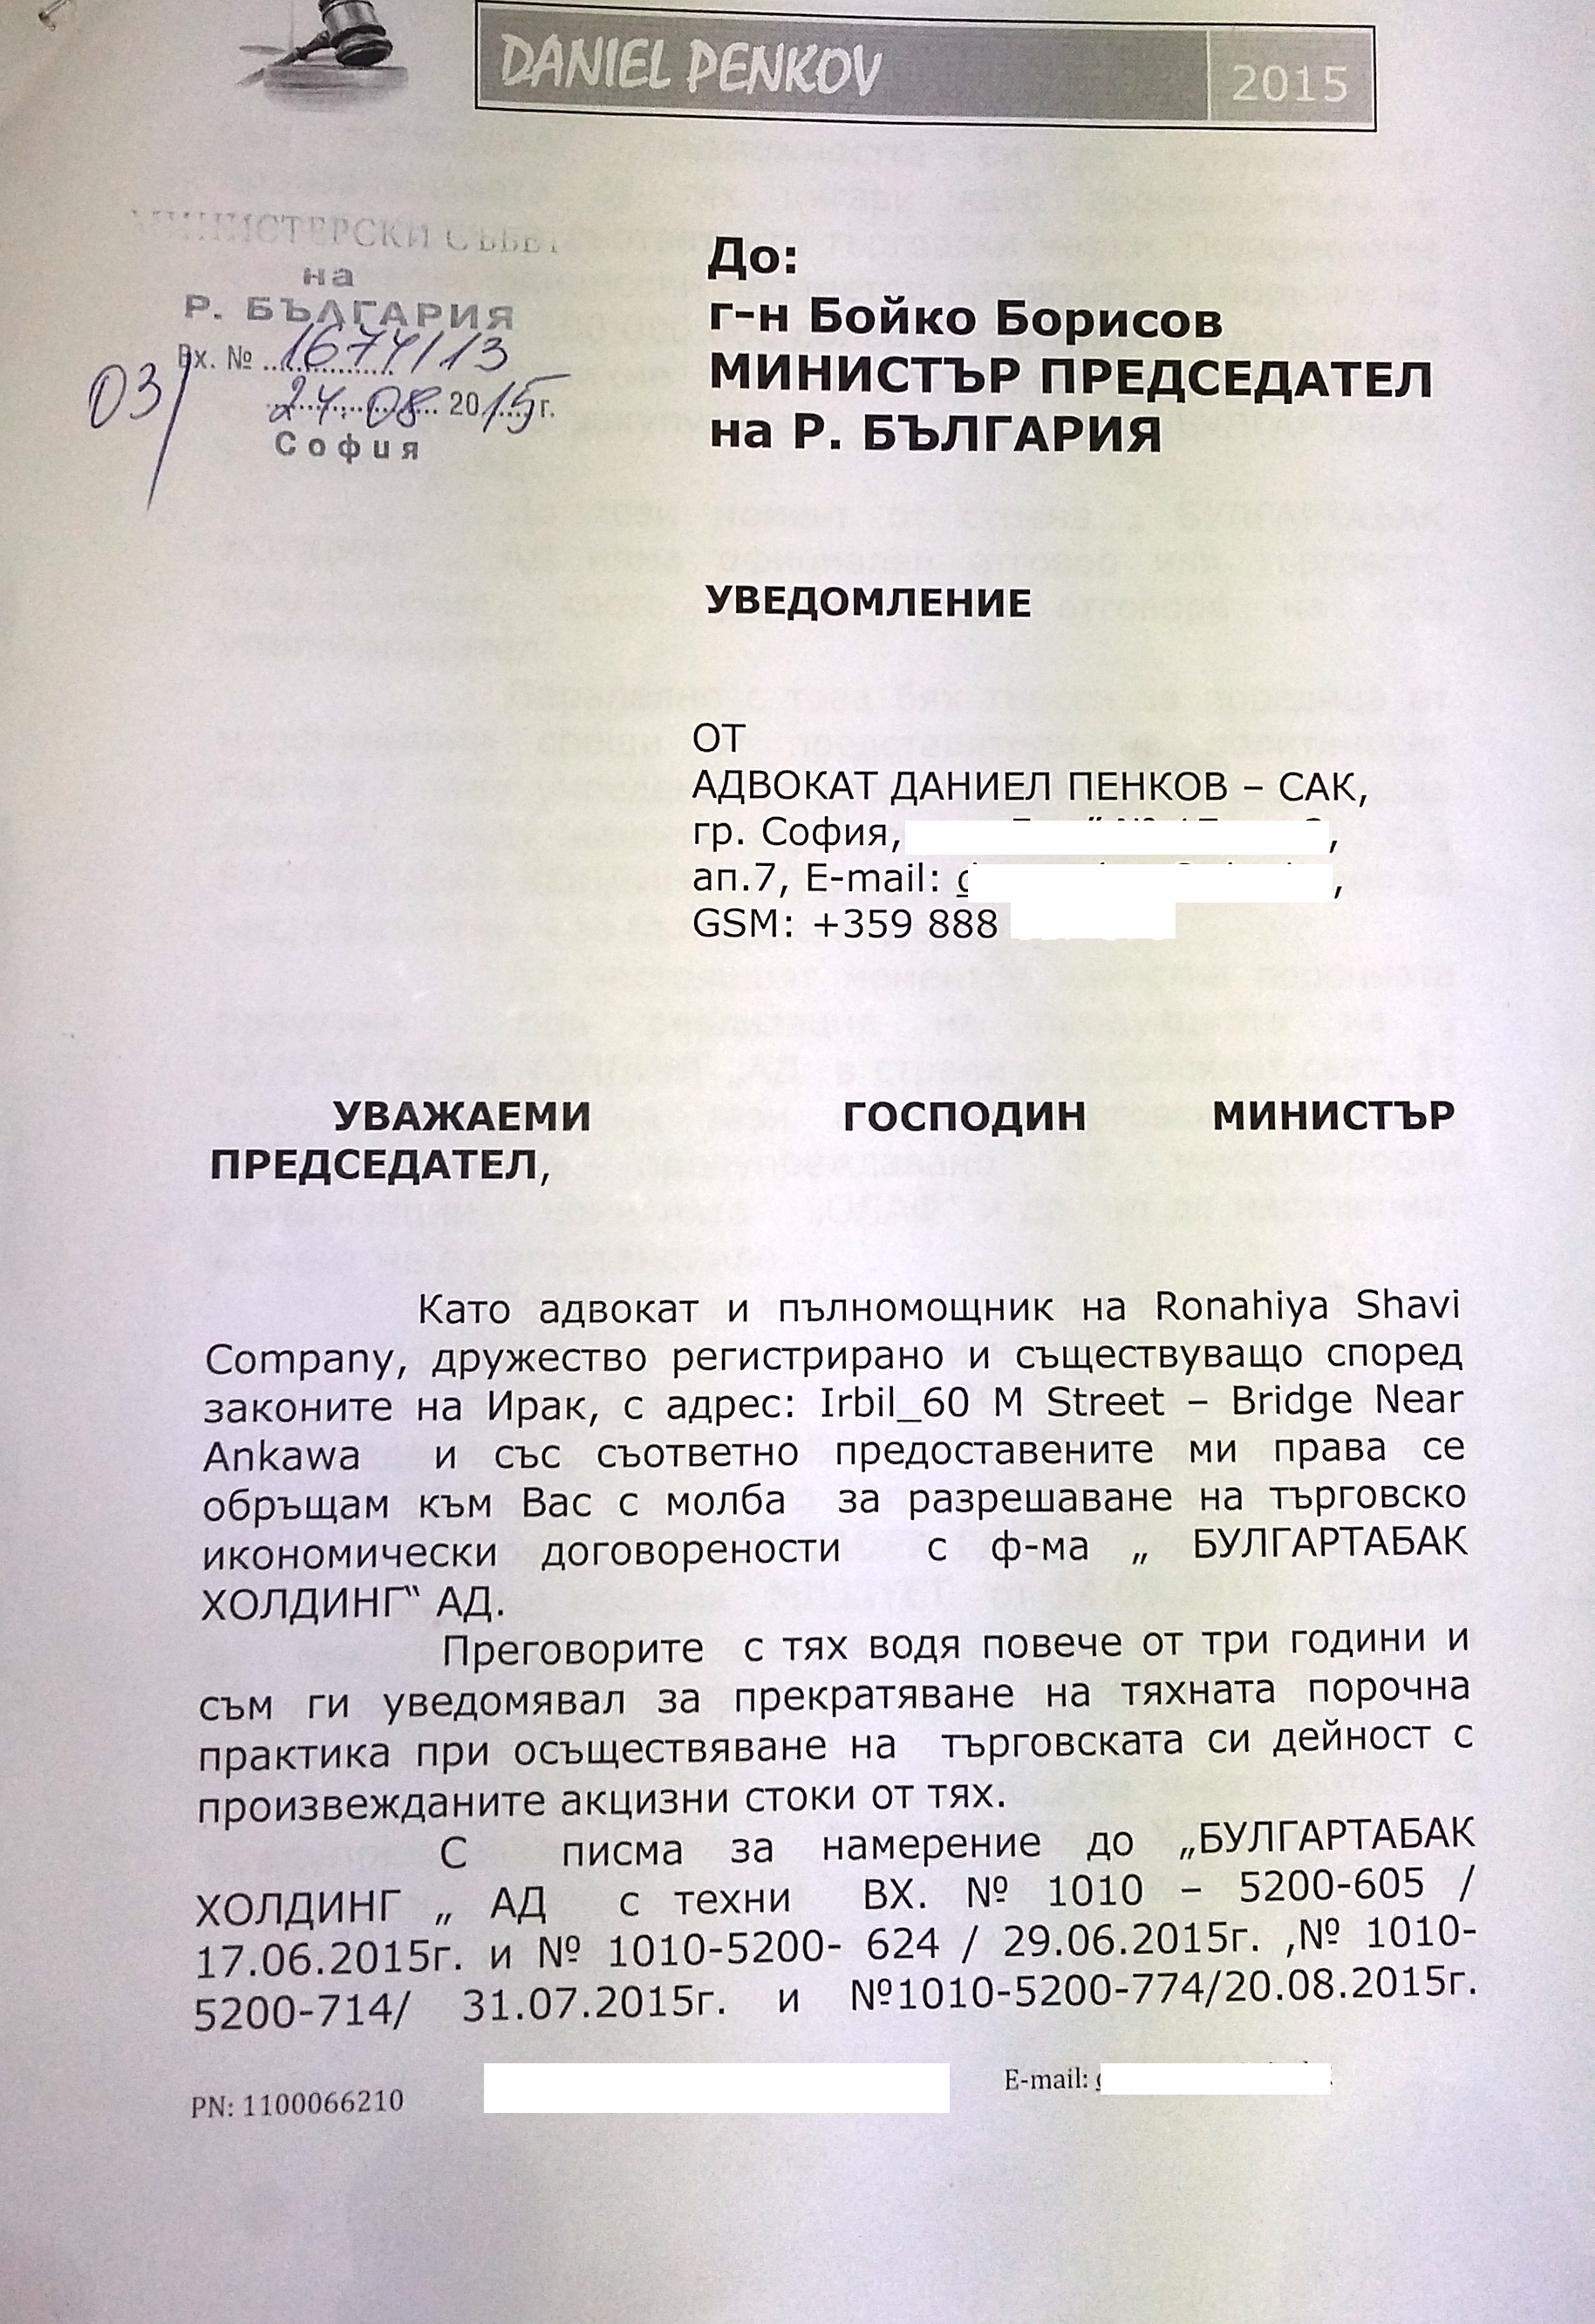 Борисов был уведомлен и знал, что происходит  «Булгартабак» отказался продавать сигареты официальным импортерам в Азии и Африке